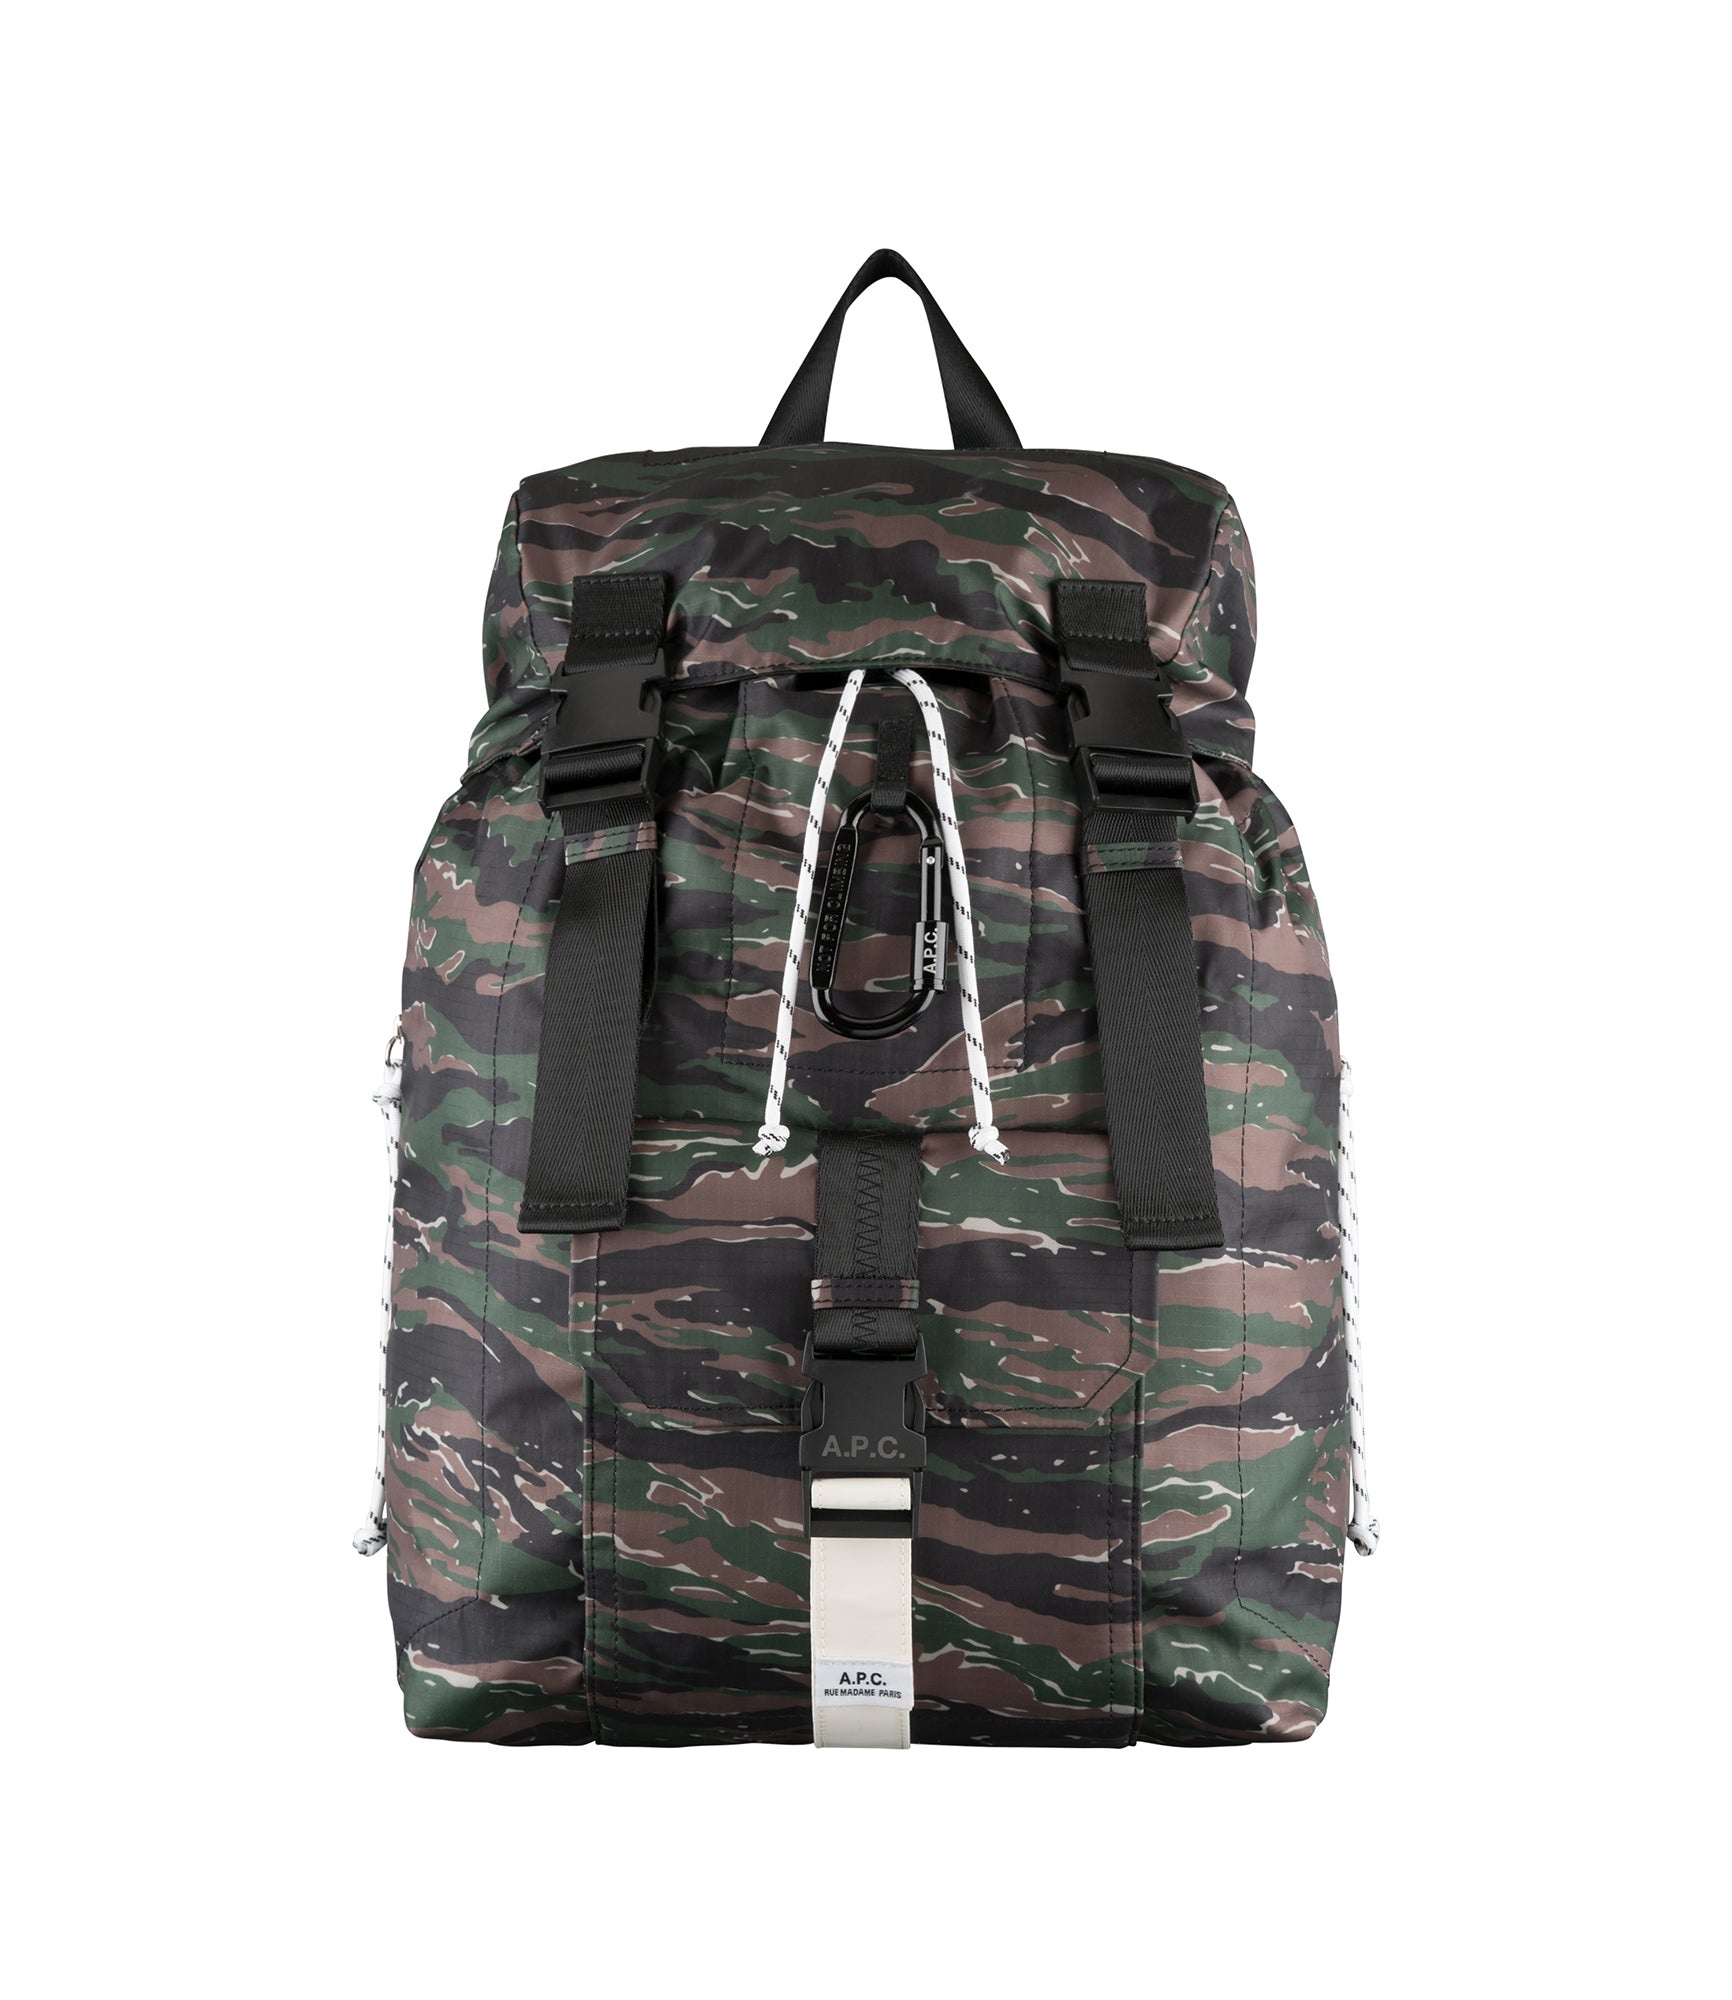 Trek backpack - 1